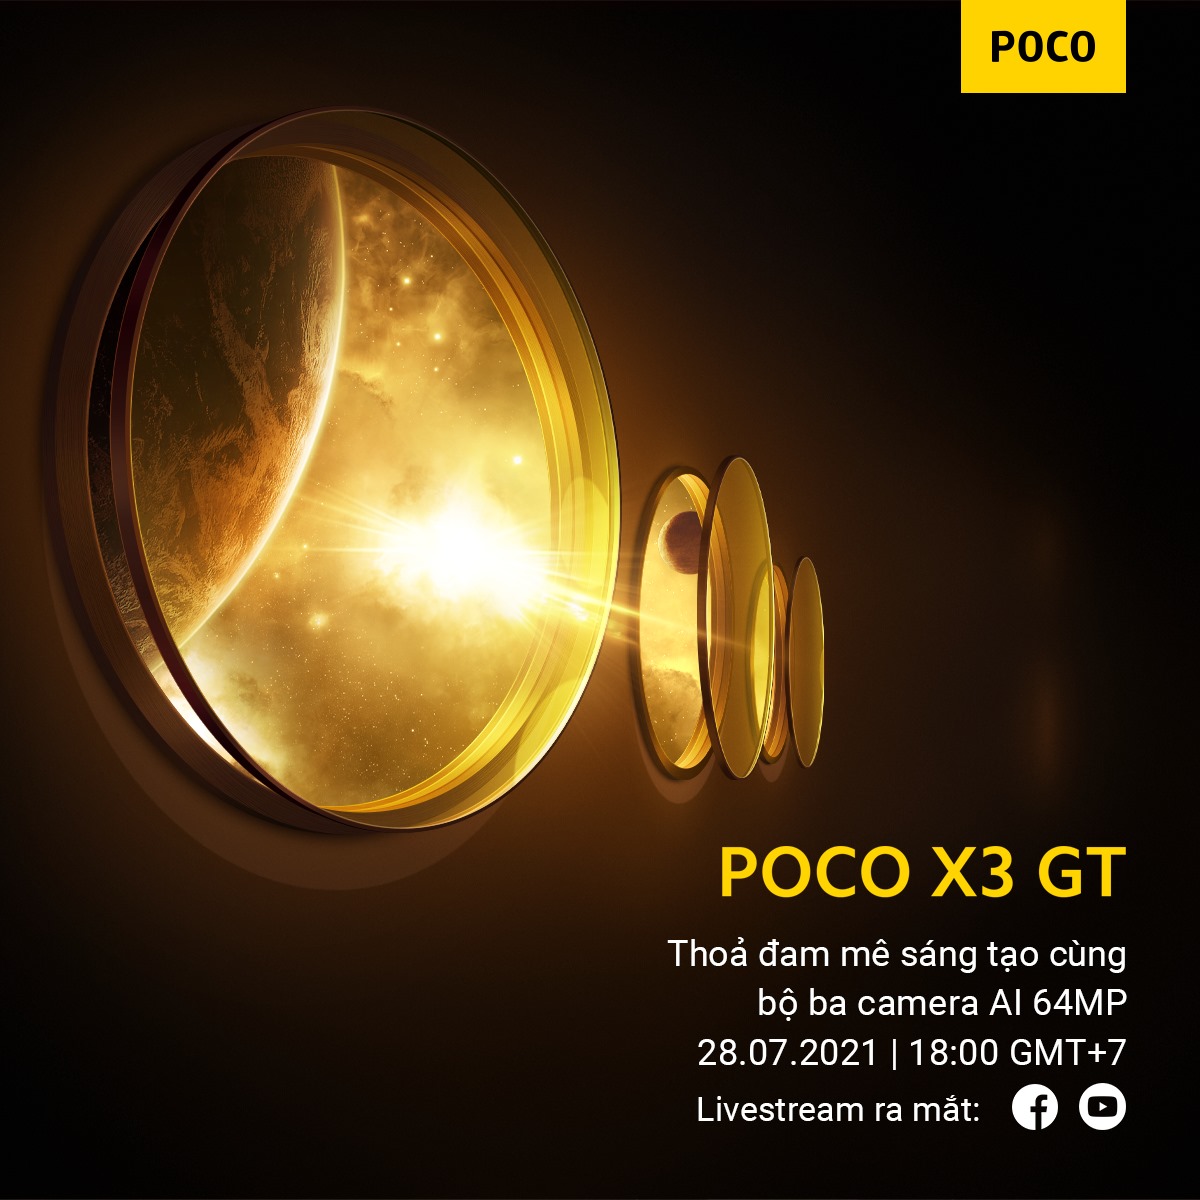 Xiaomi giới thiệu trực tuyến sản phẩm mới POCO X3 GT tại thị trường Việt Nam vào tối nay